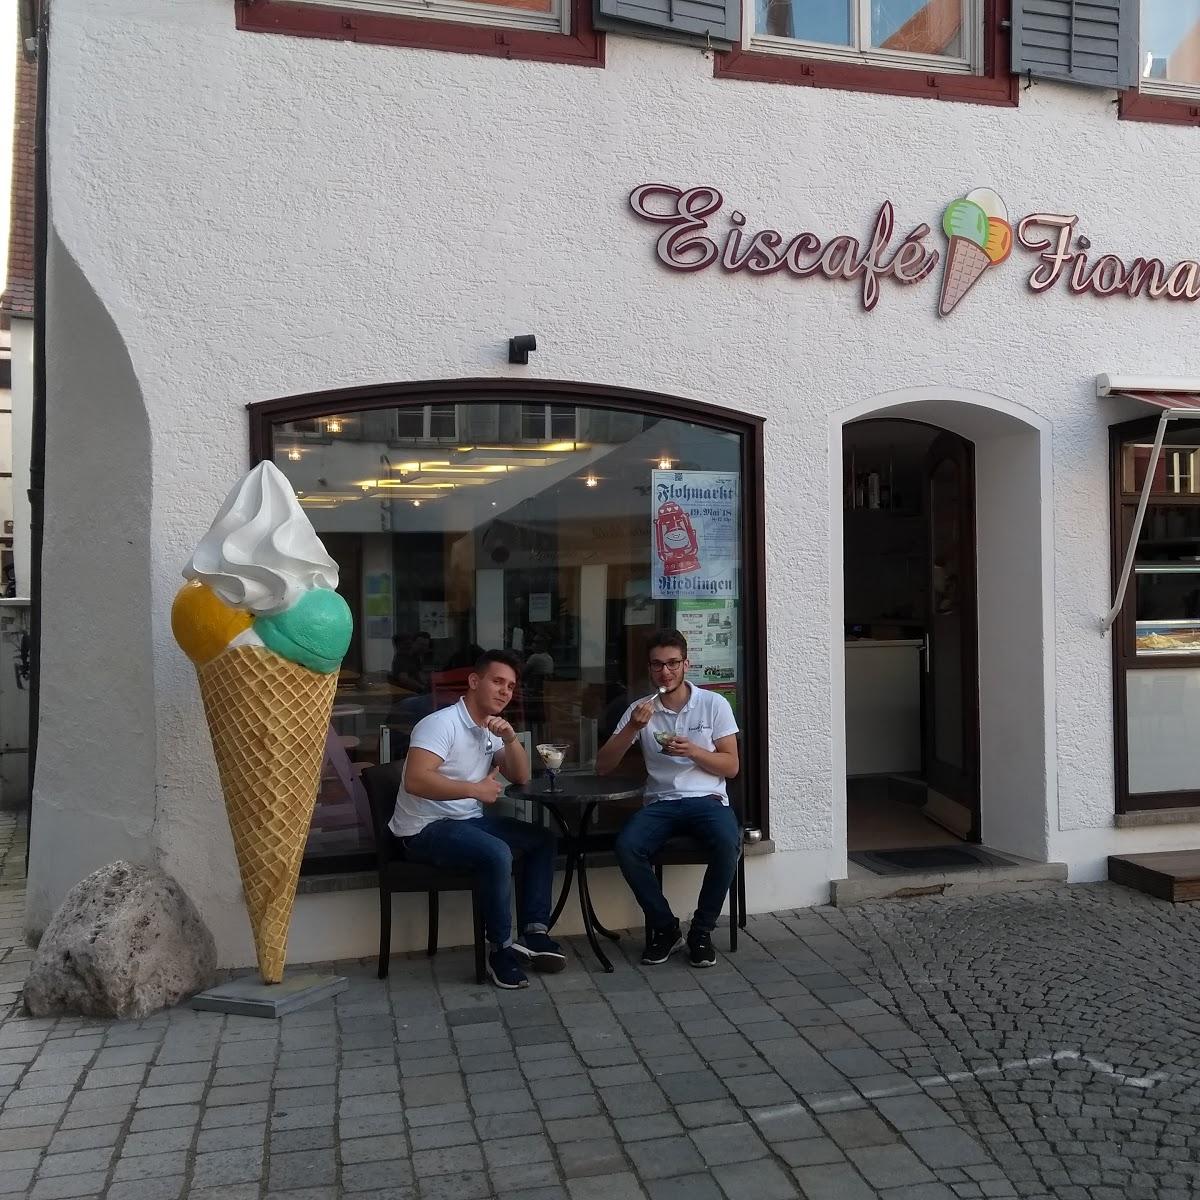 Restaurant "Eiscafé Fiona" in  Riedlingen